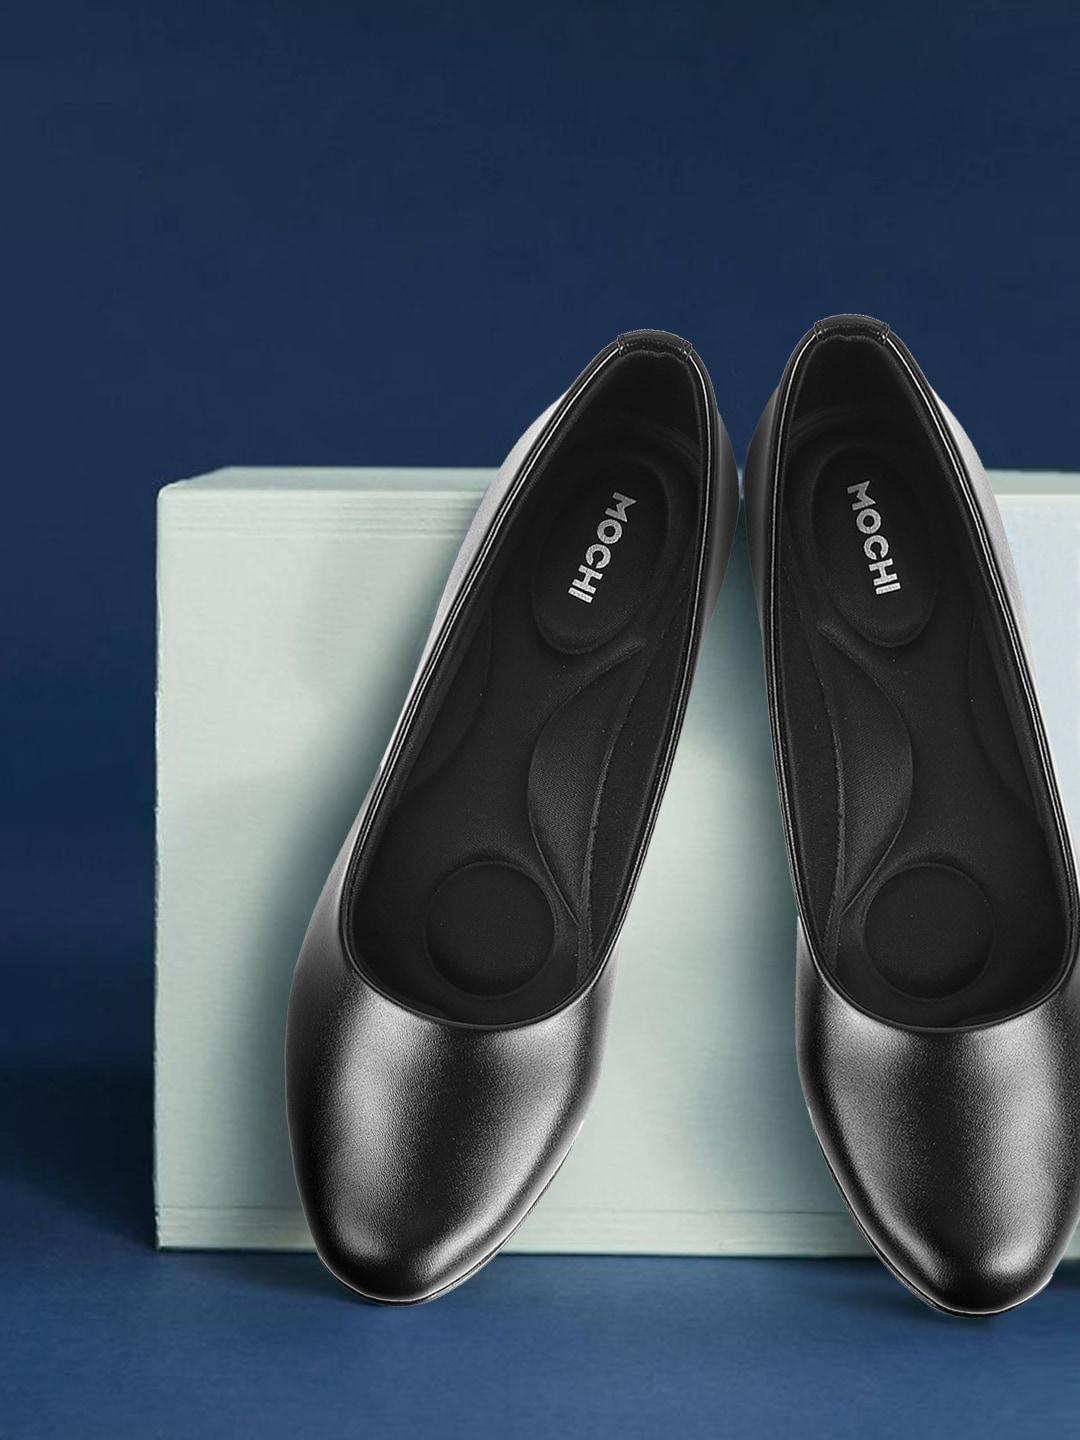 mochi-women-black-comfort-heels